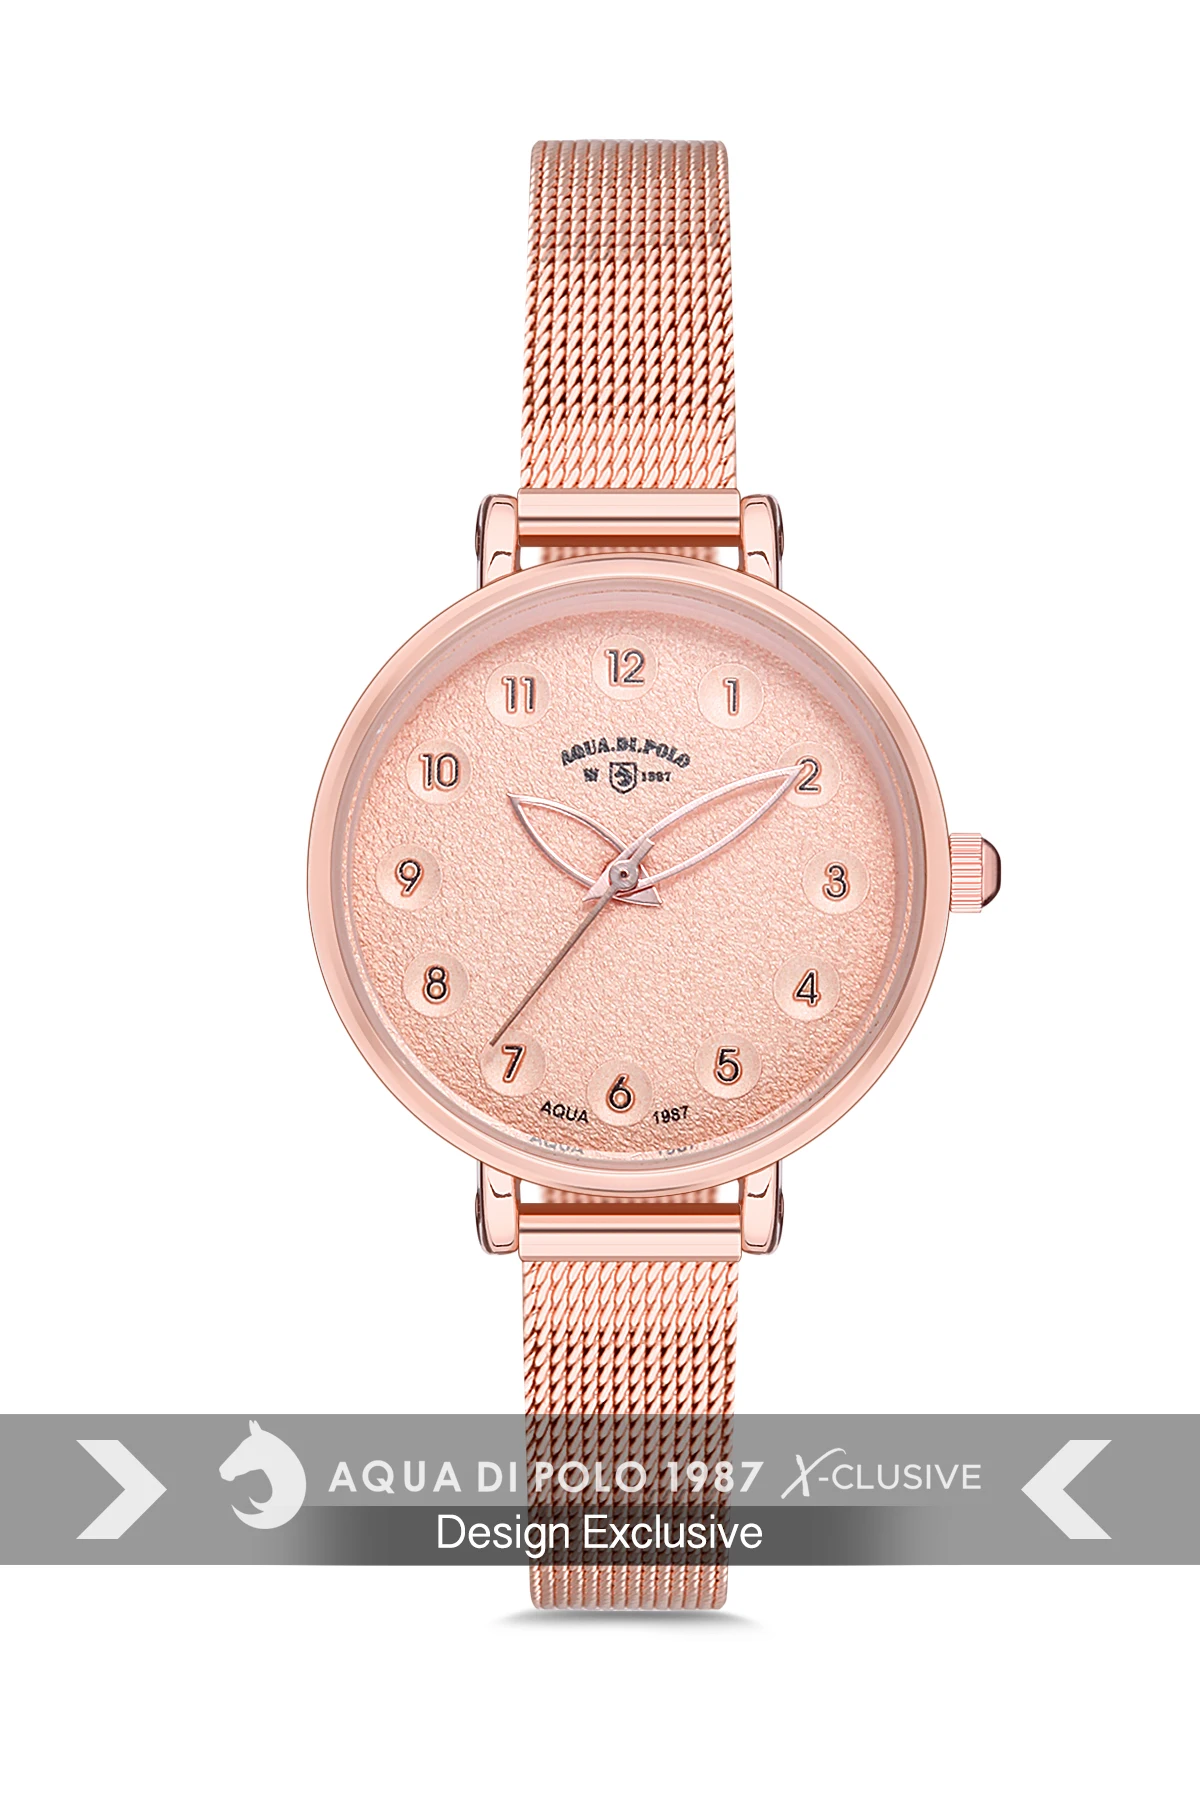 

2022 женские Роскошные наручные часы лучшего бренда с браслетом отличного качества Aqua di Polo 1987 APSV1-A6193-KH222 сталь